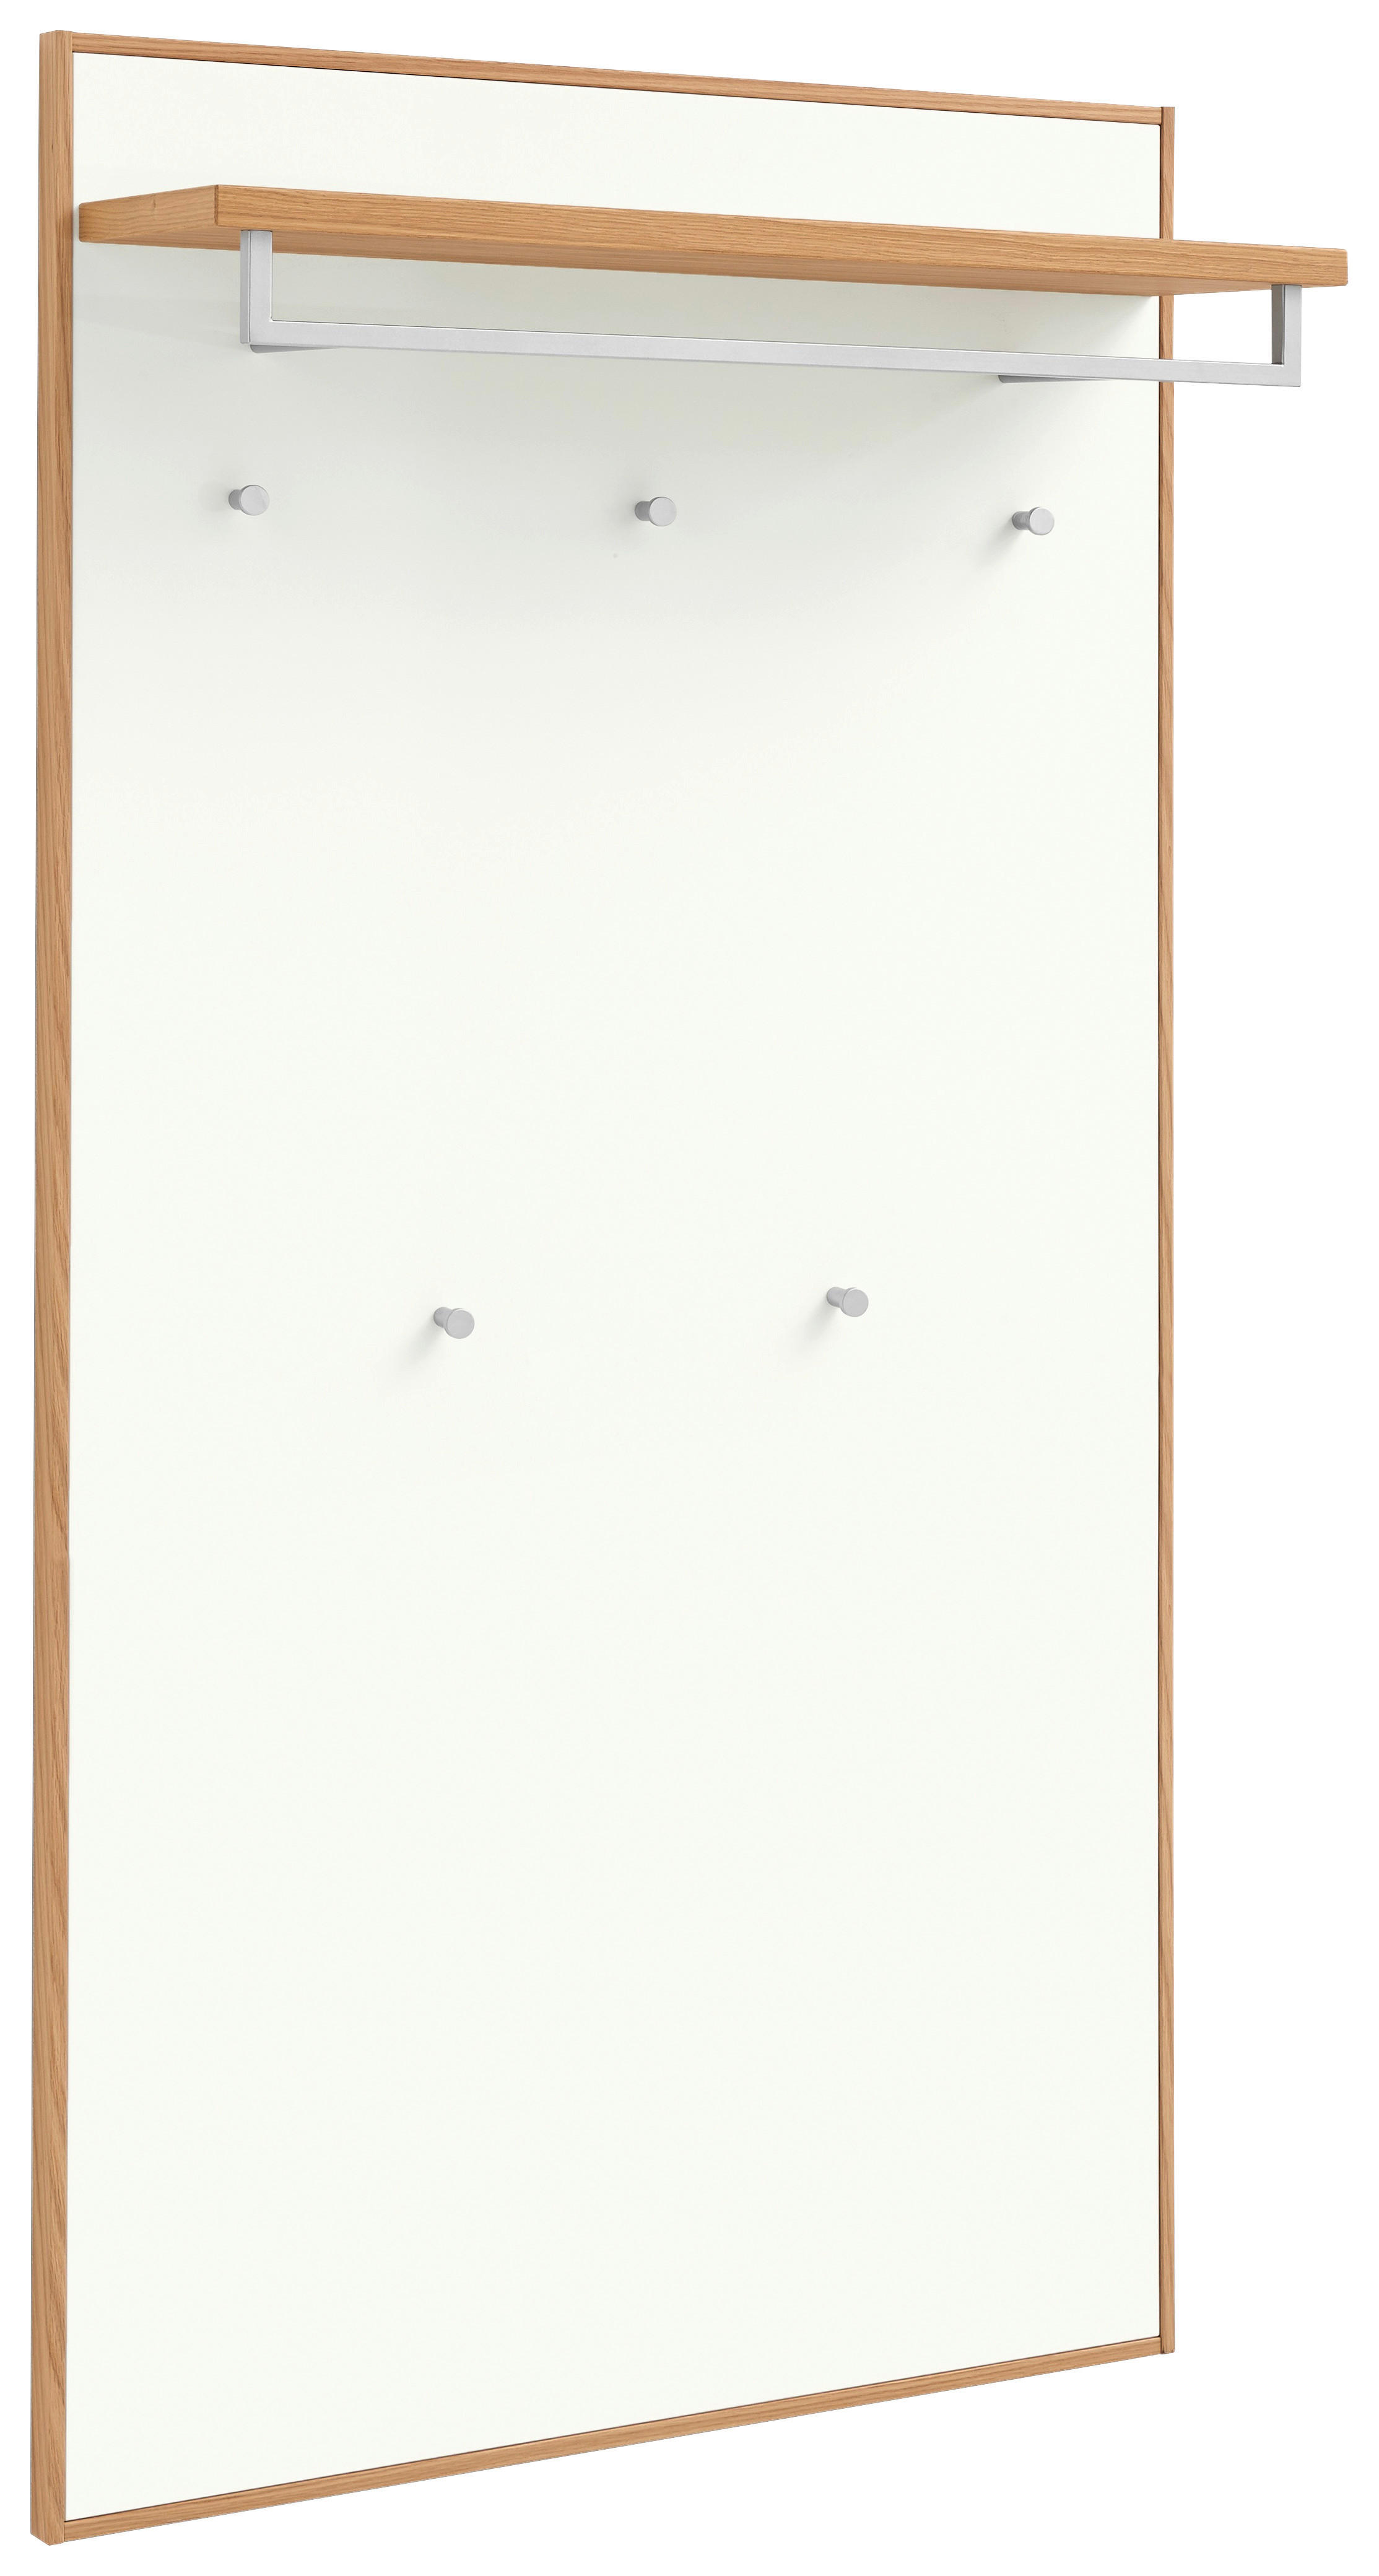 GARDEROBENPANEEL 83/183/29 cm  - Eiche Bianco/Weiß, Design, Holz/Holzwerkstoff (83/183/29cm)